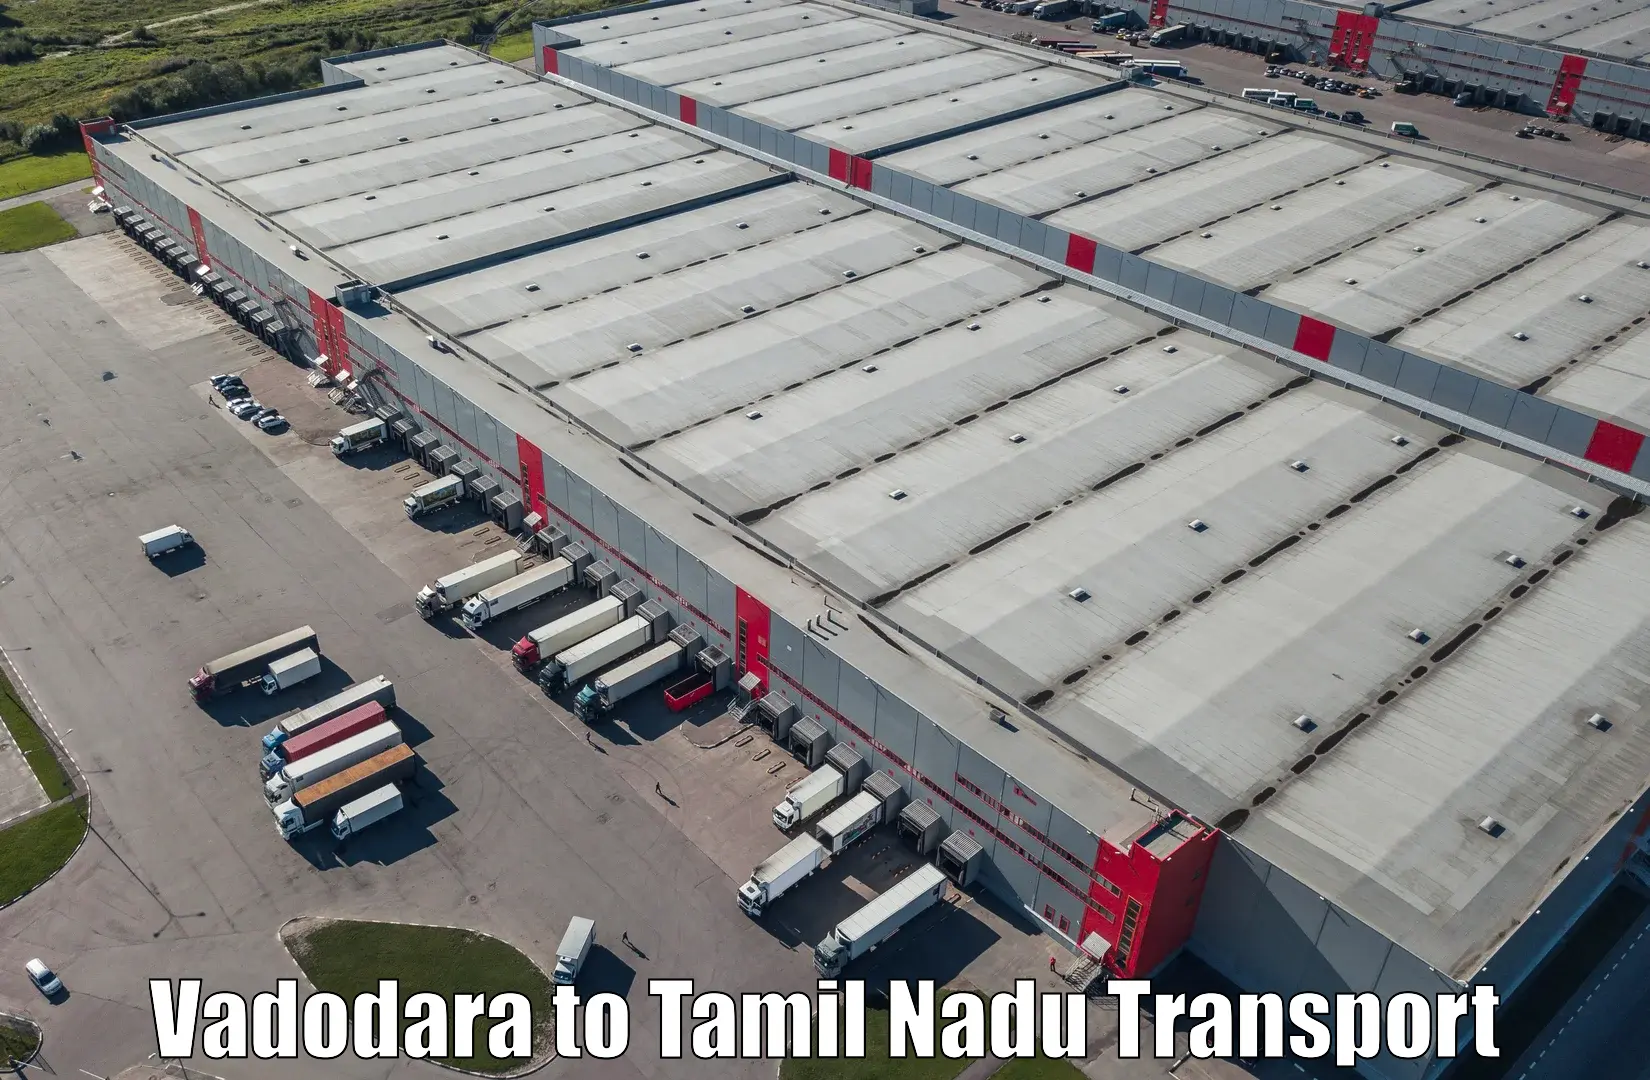 Cargo transportation services Vadodara to Maharajapuram